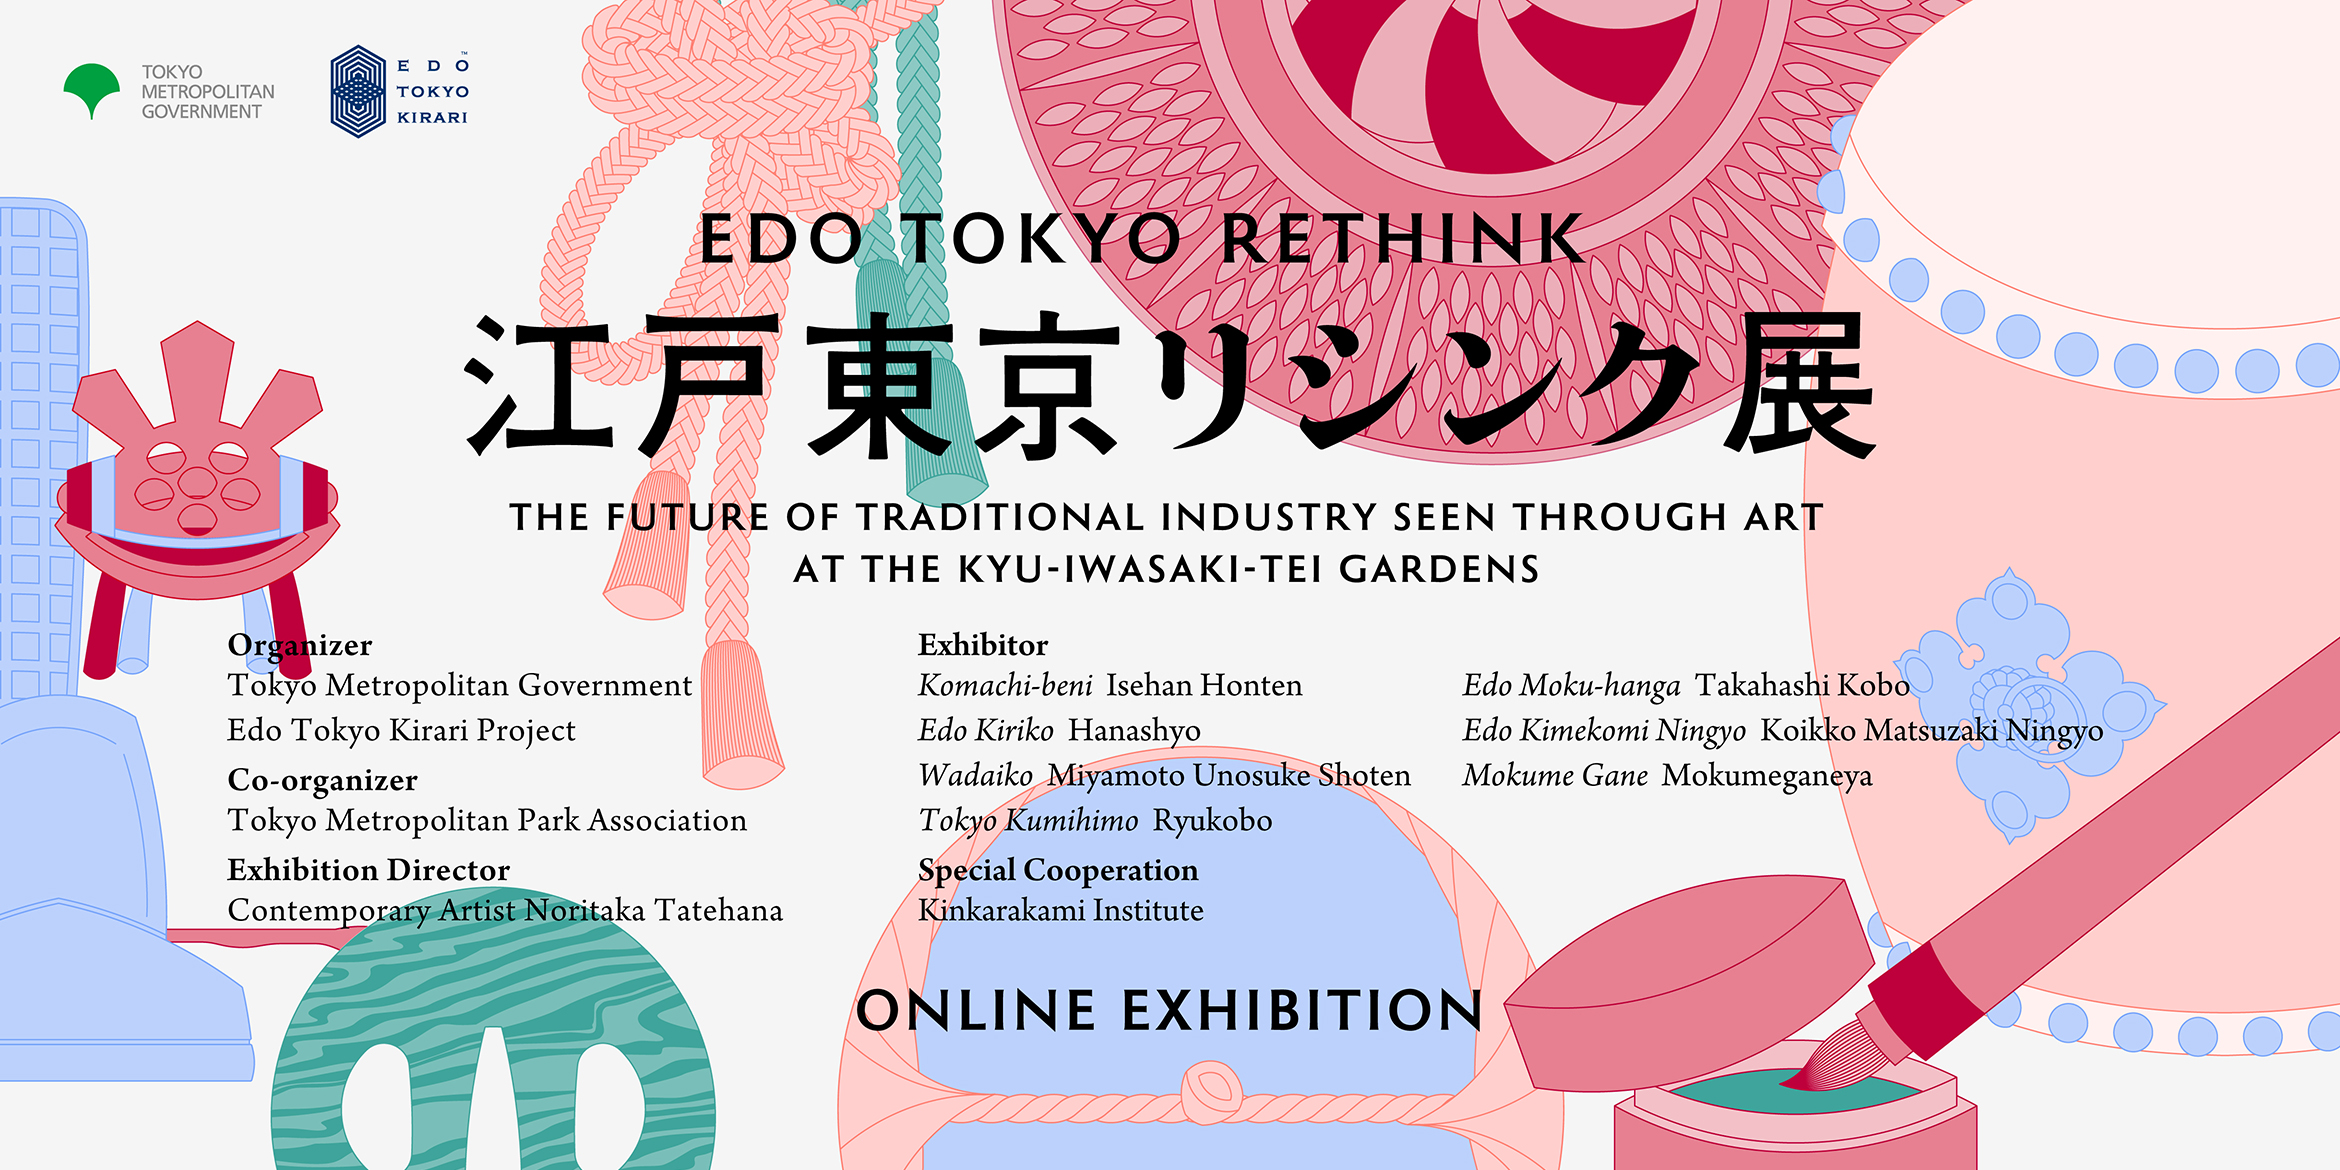 【Edo Tokyo Rethink】Kyū-Iwasaki-tei Gardens: Conception d’une exposition dans un lieu unique